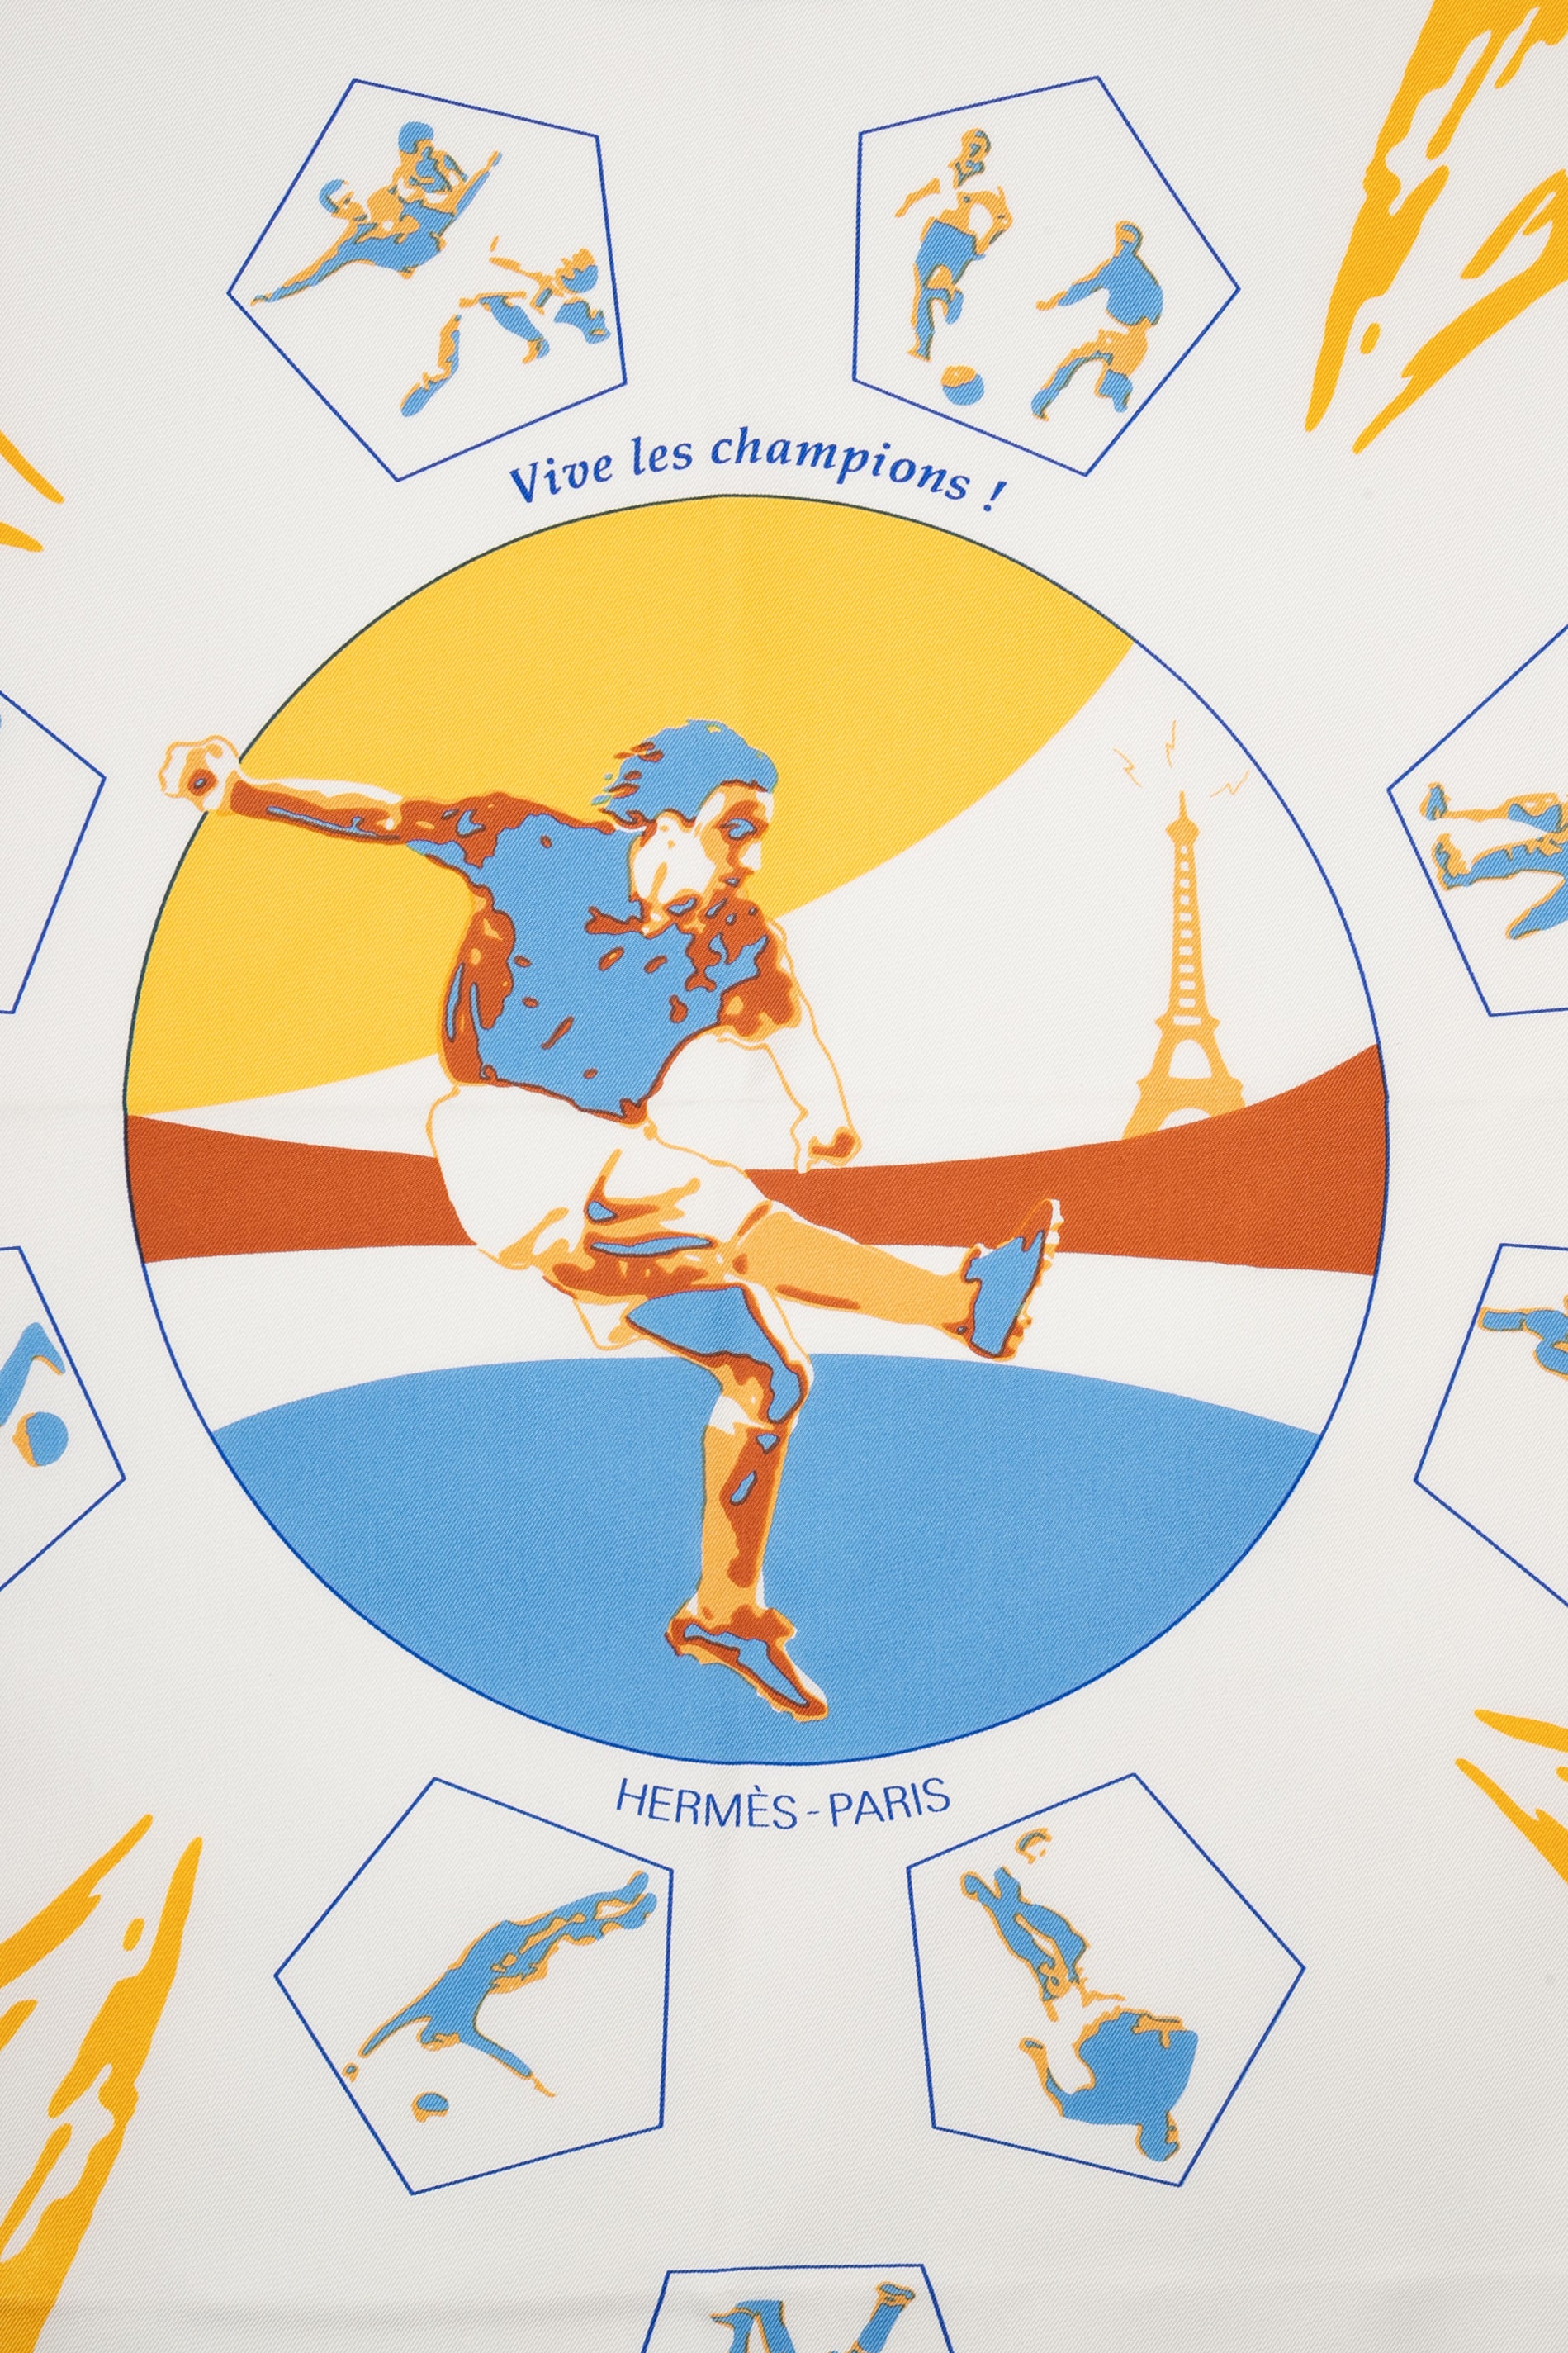 Foulard Coupe du monde 1998 "Vive les Champions" Hermès